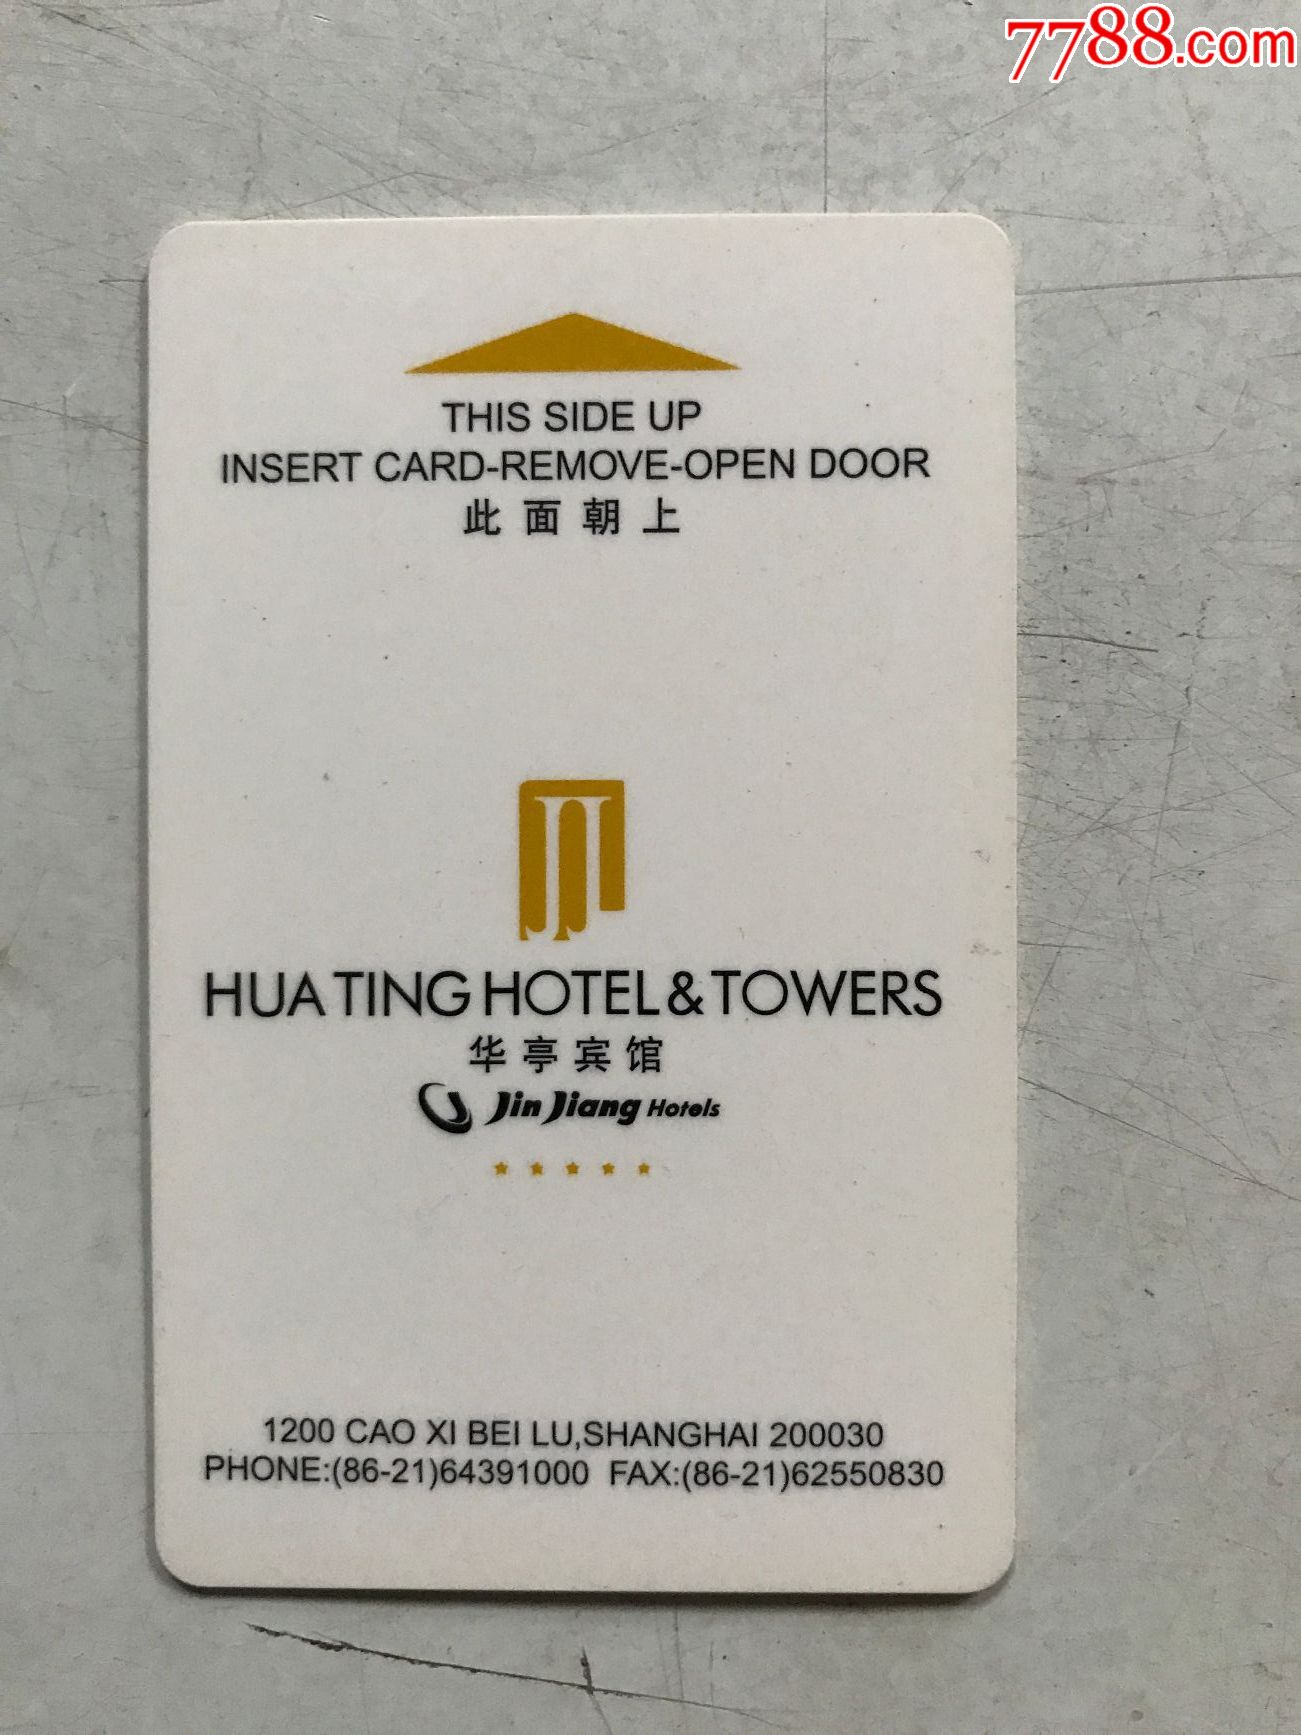 宾馆房卡图片 卡号图片